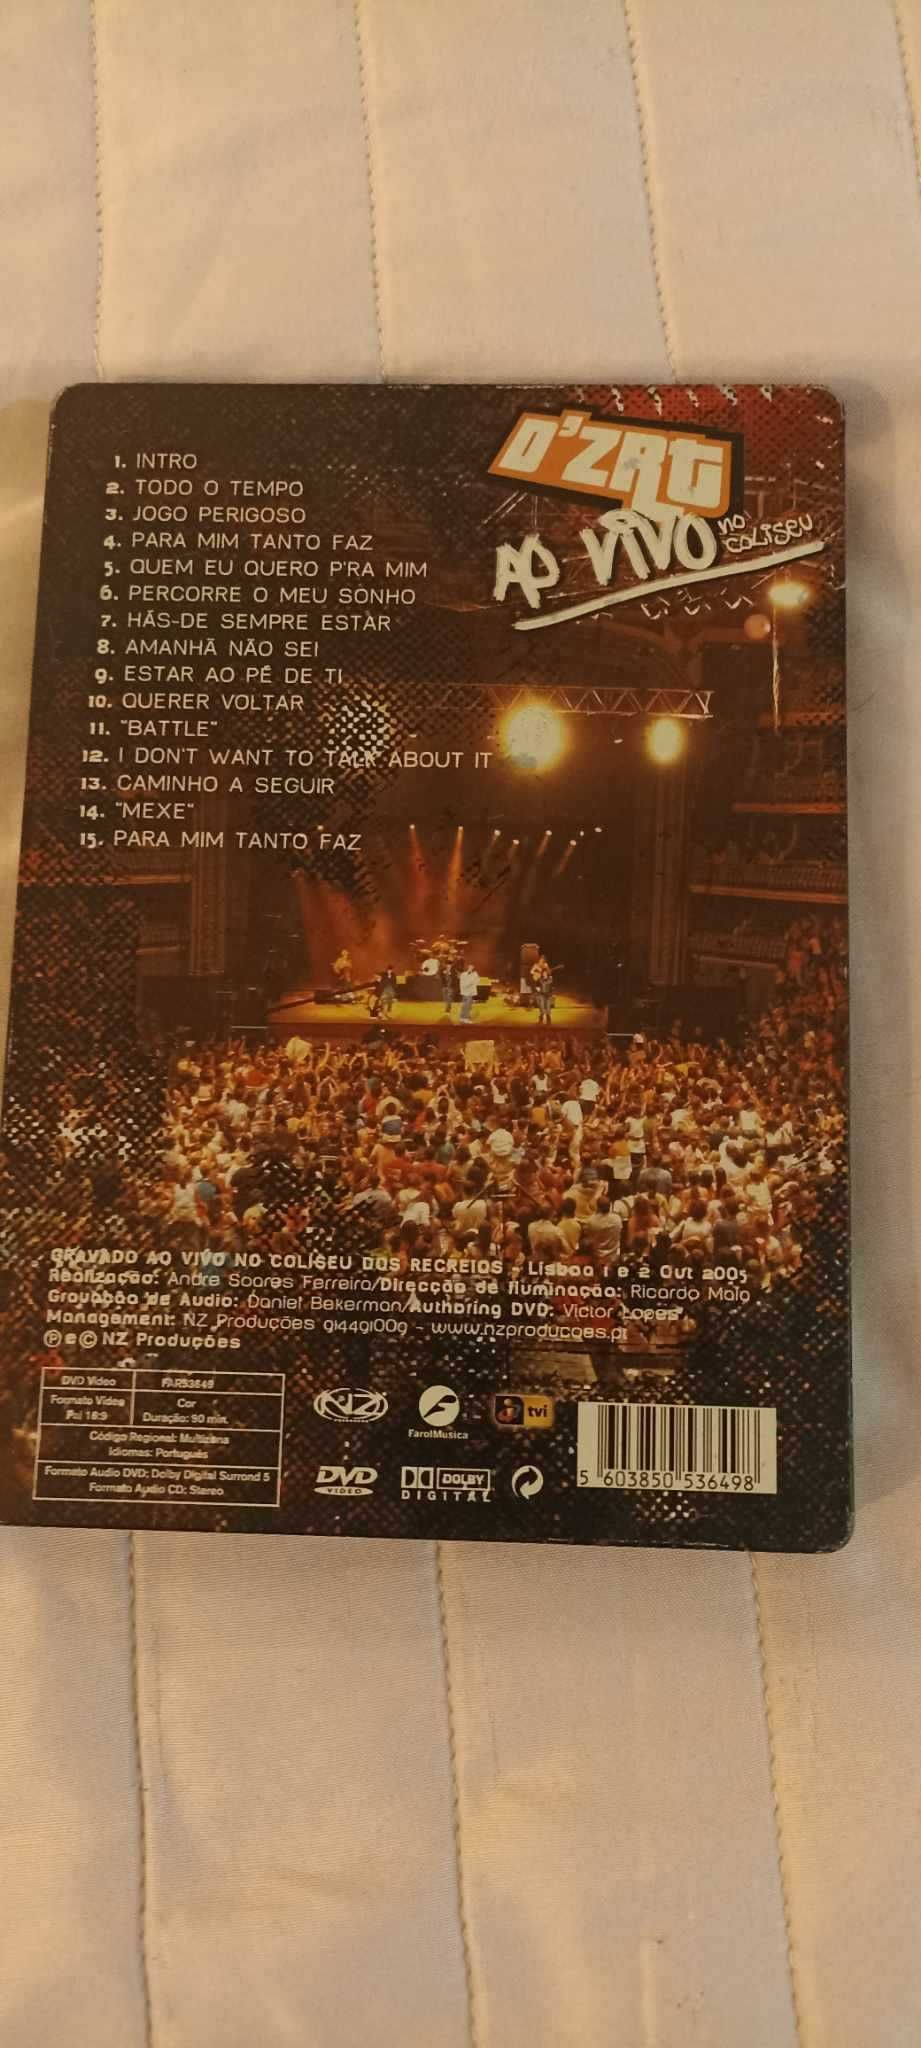 D'ZRT ao vivo no Coliseu CD + DVD ( Outubro 2005)